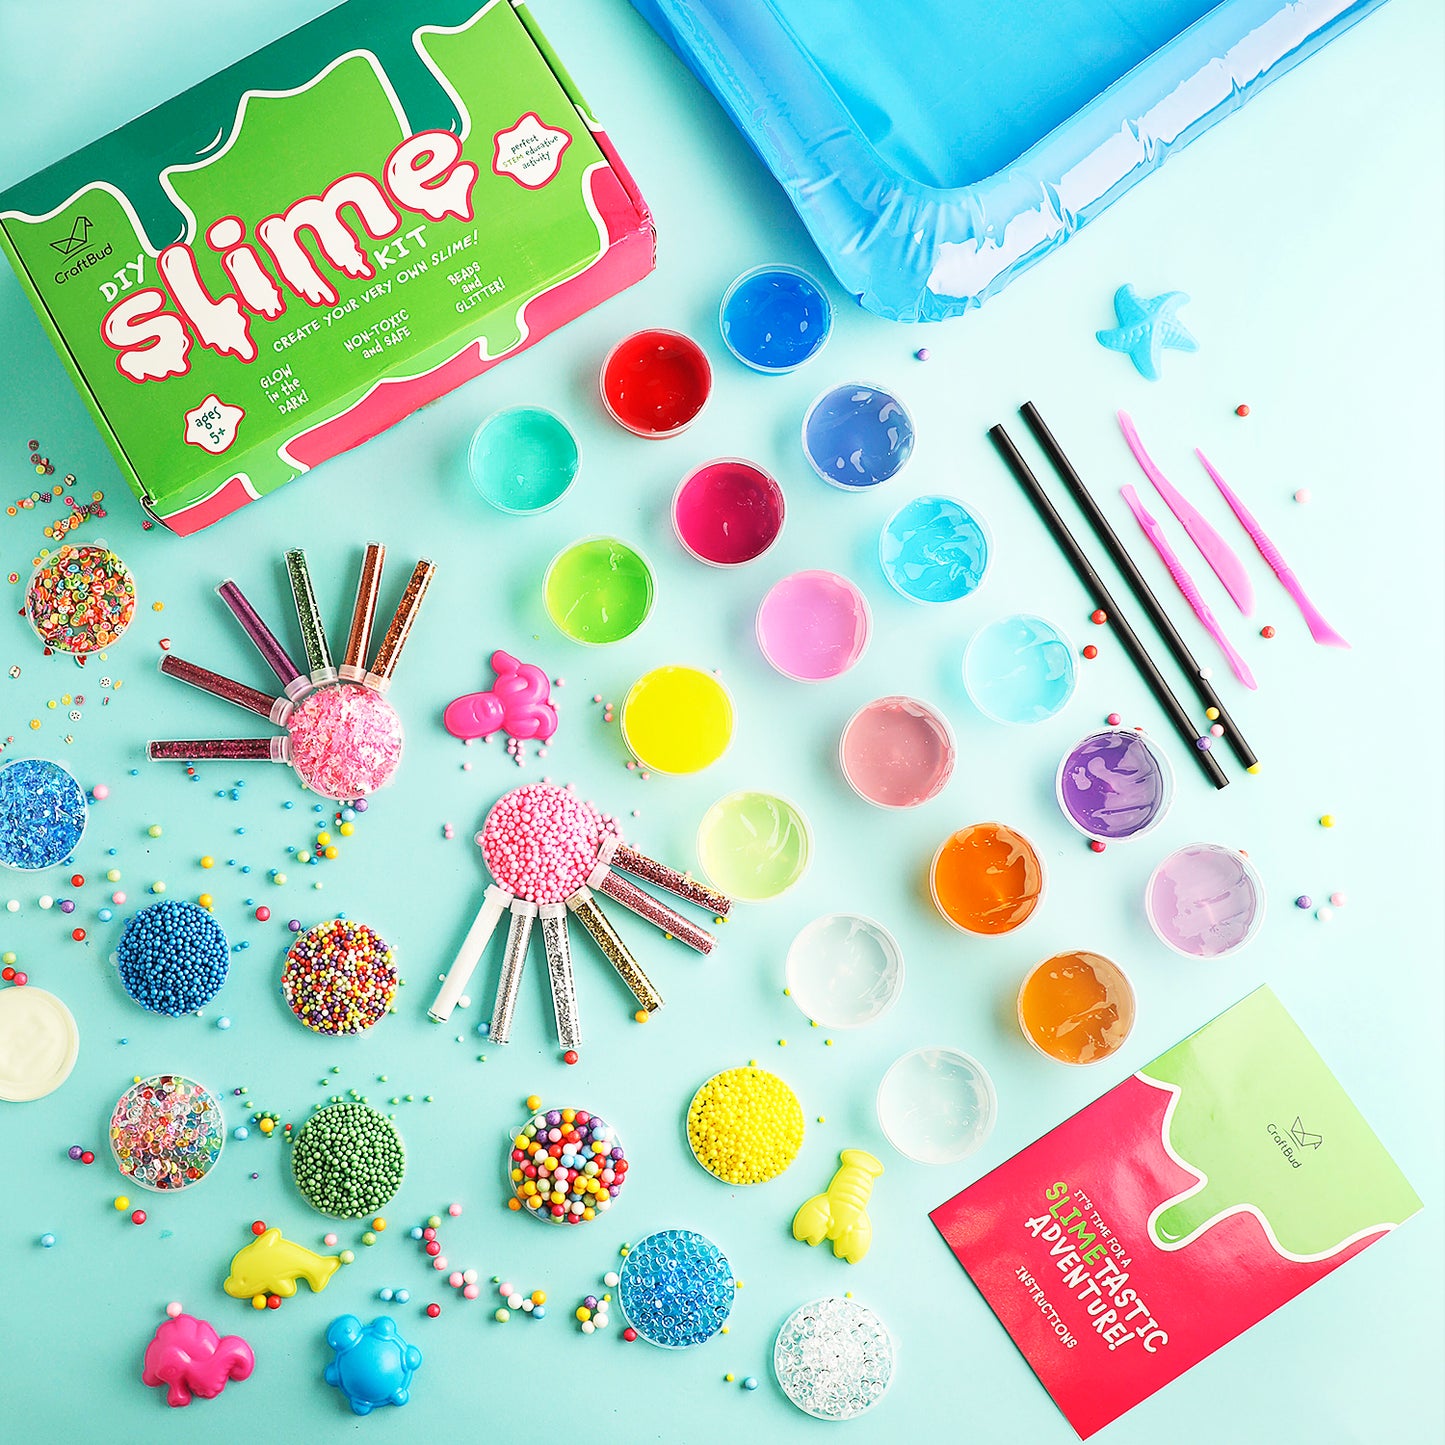 CraftBud Slime Kit DIY Toy